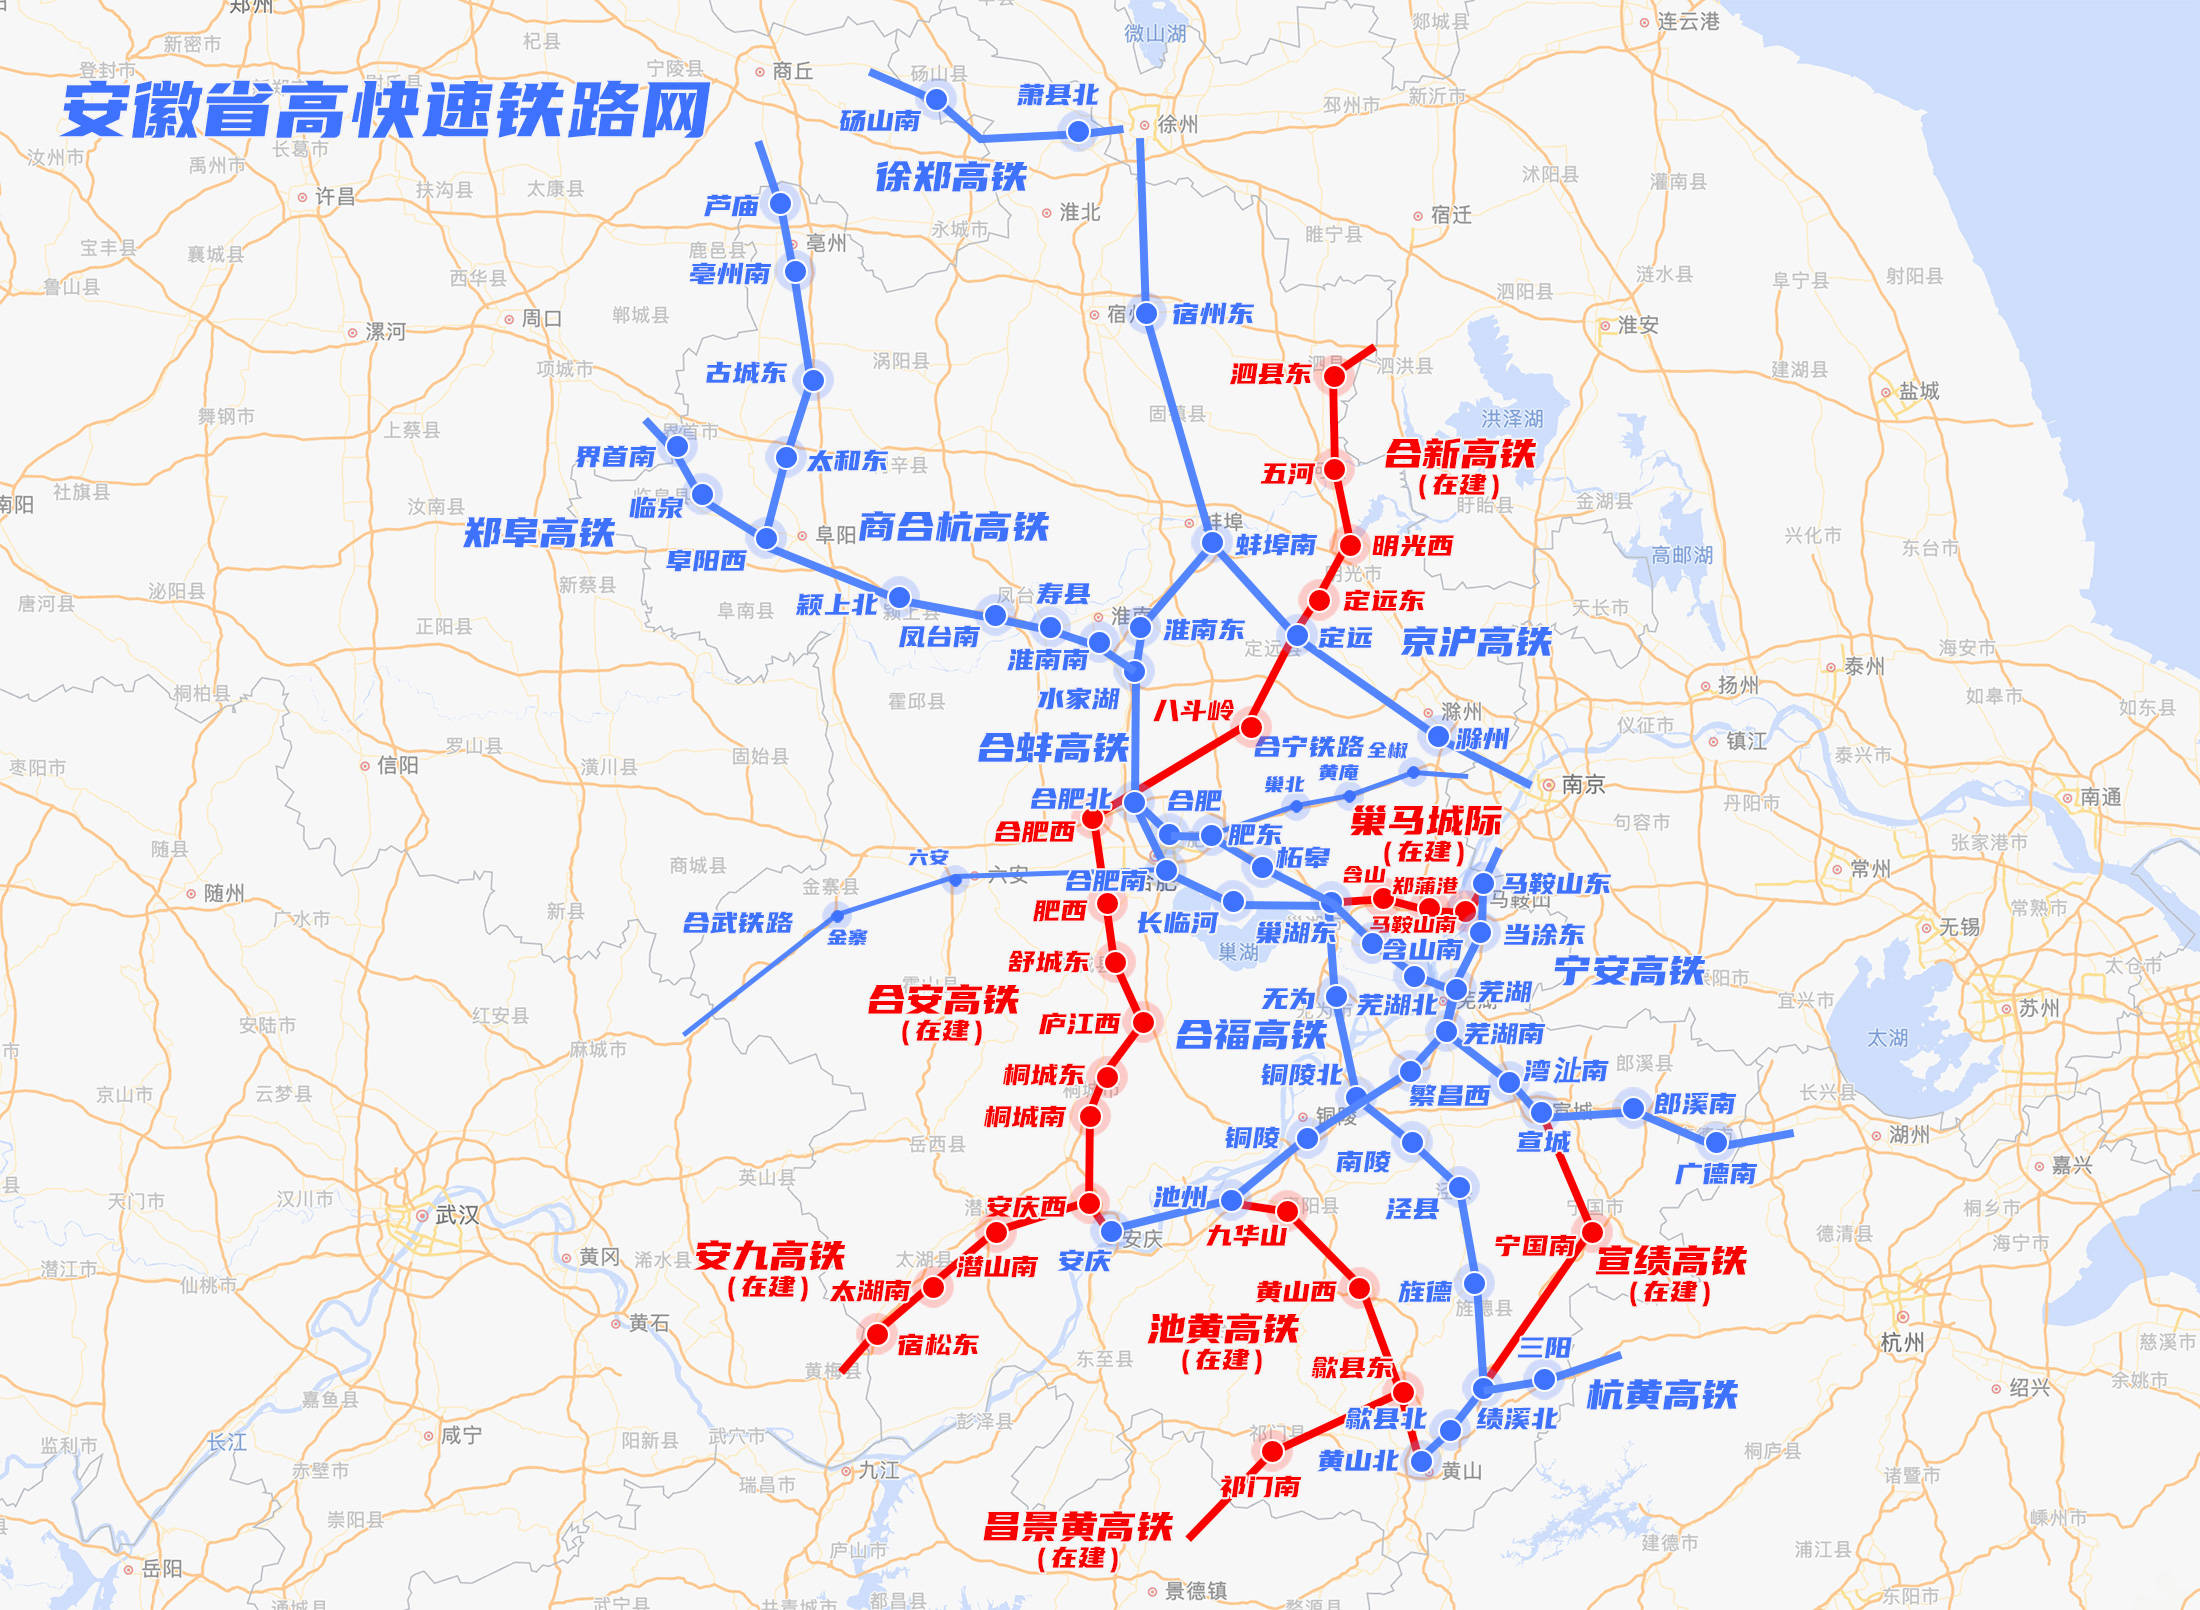 安徽省高铁快铁城际铁路线网运行建设规划图